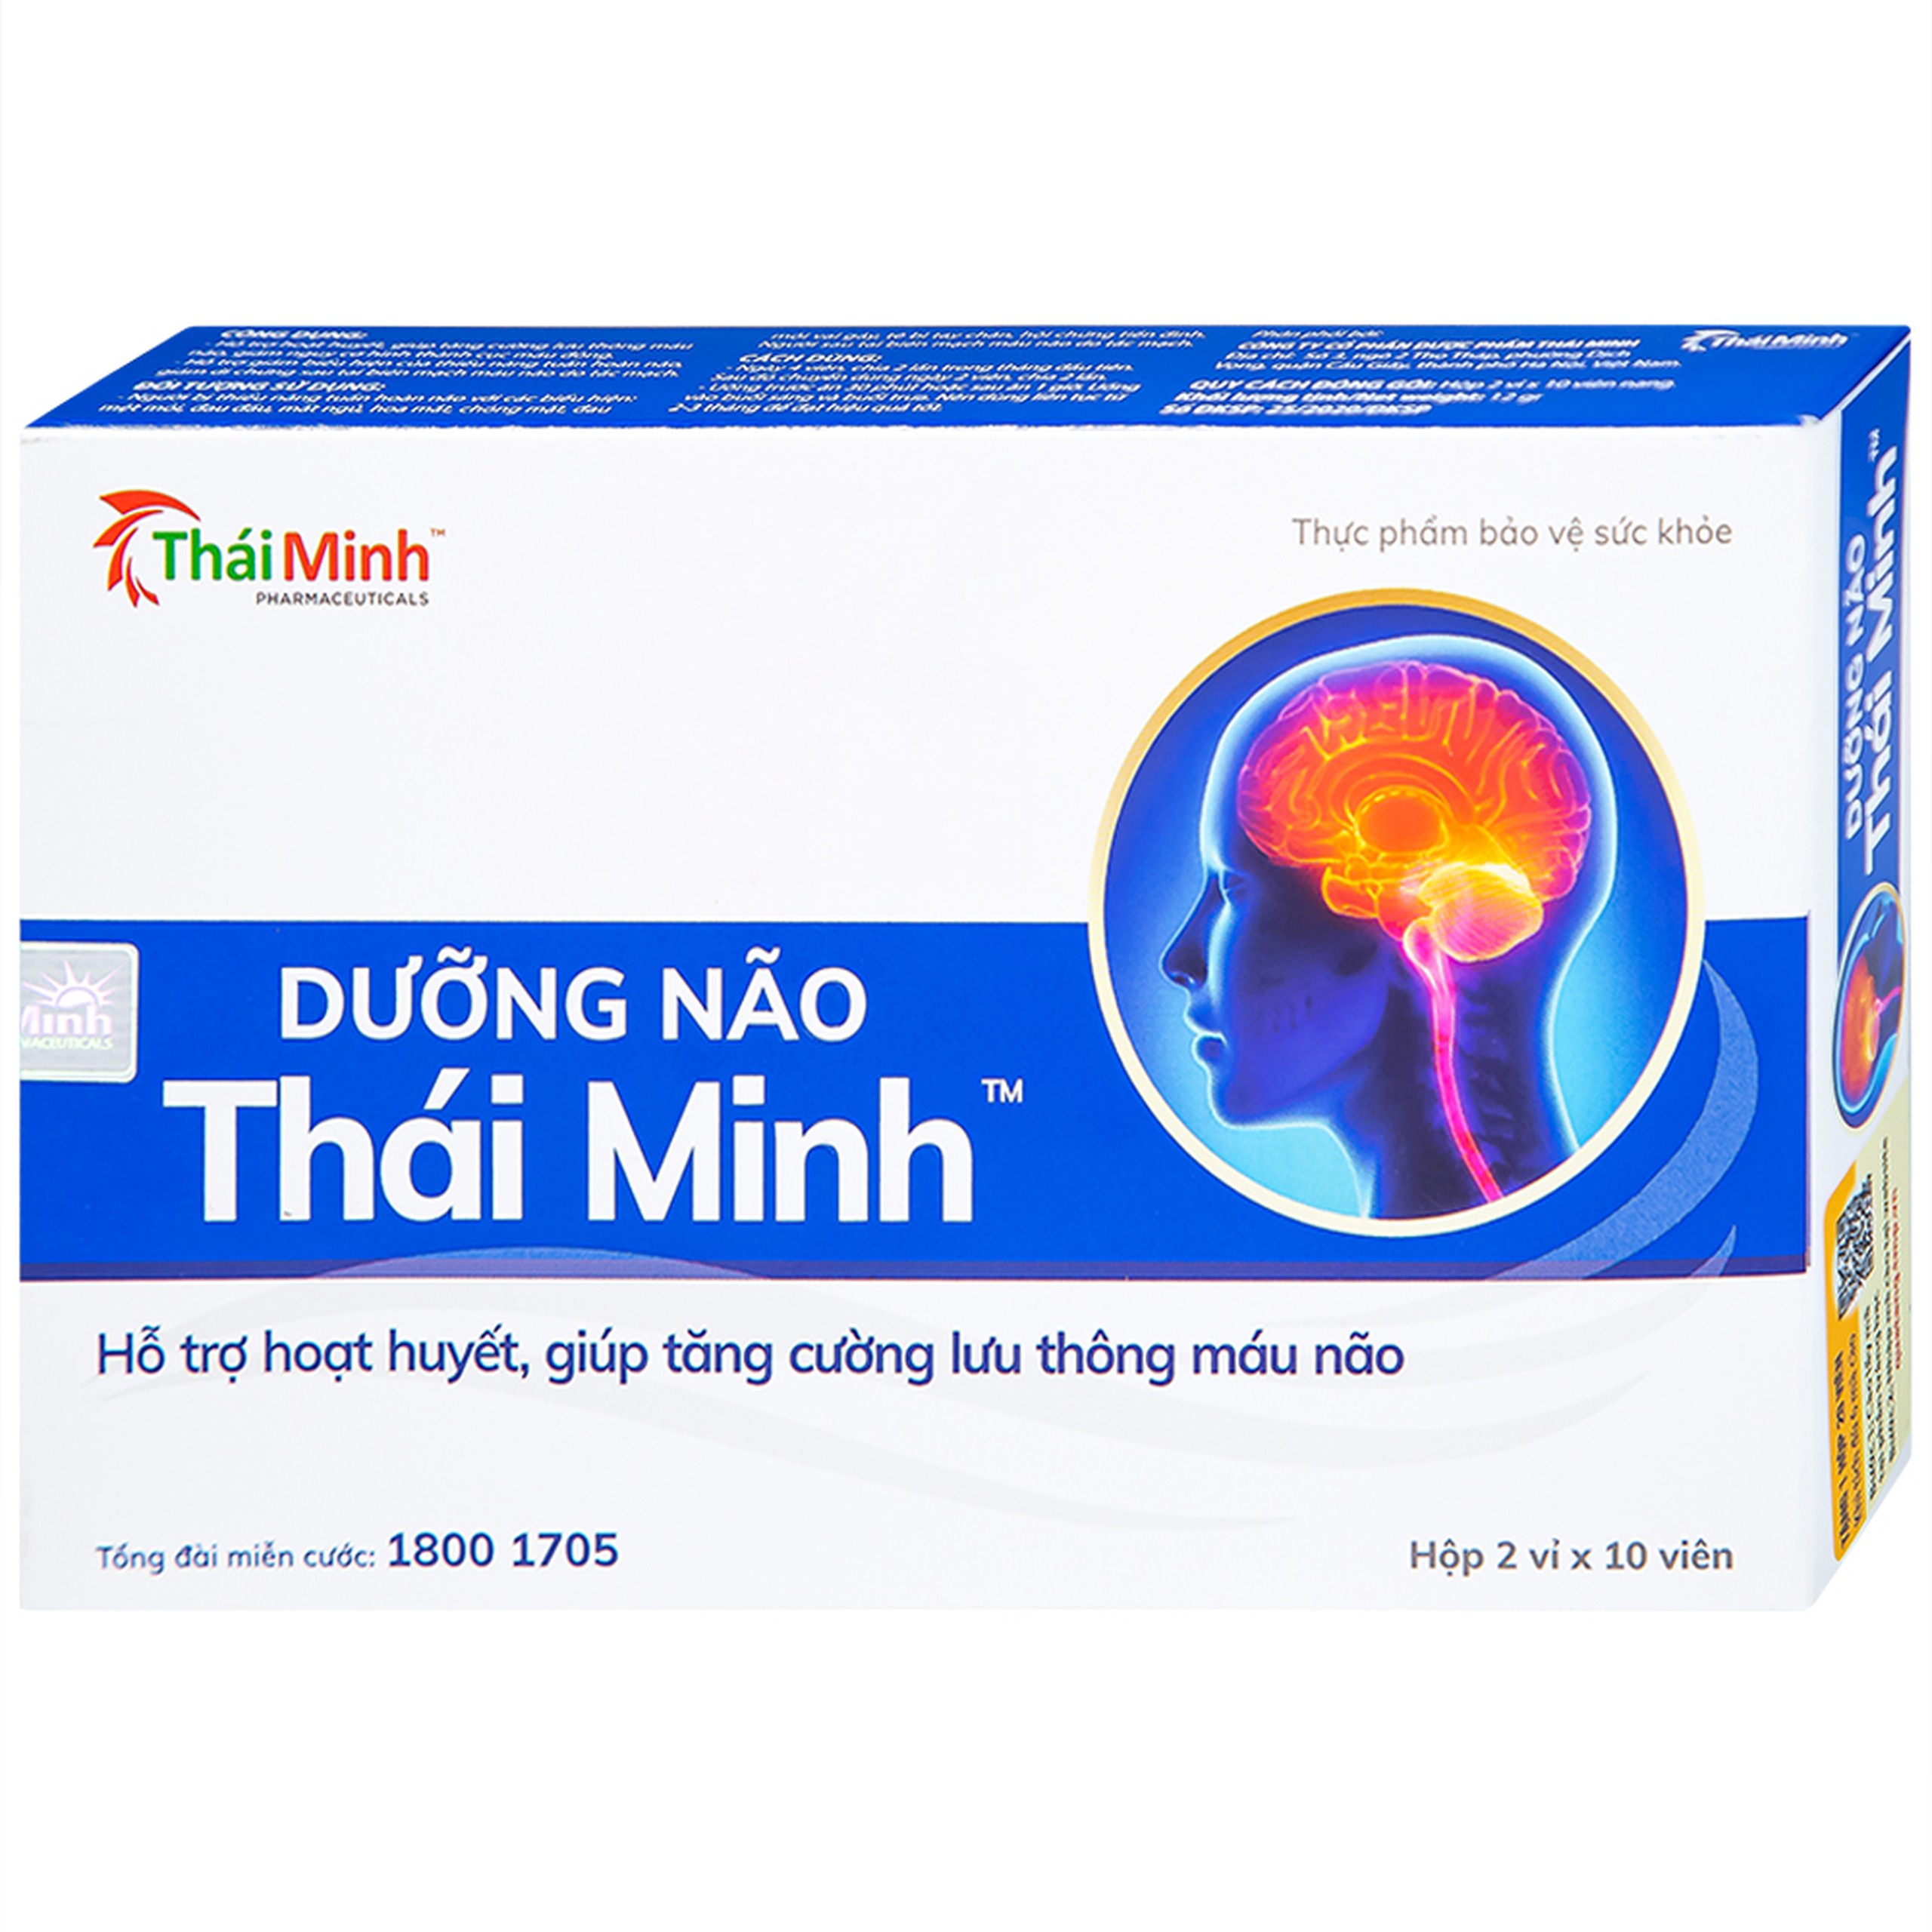 Viên uống Dưỡng Não Thái Minh hỗ trợ hoạt huyết, tăng cường lưu thông máu não (2 vỉ x 10 viên)